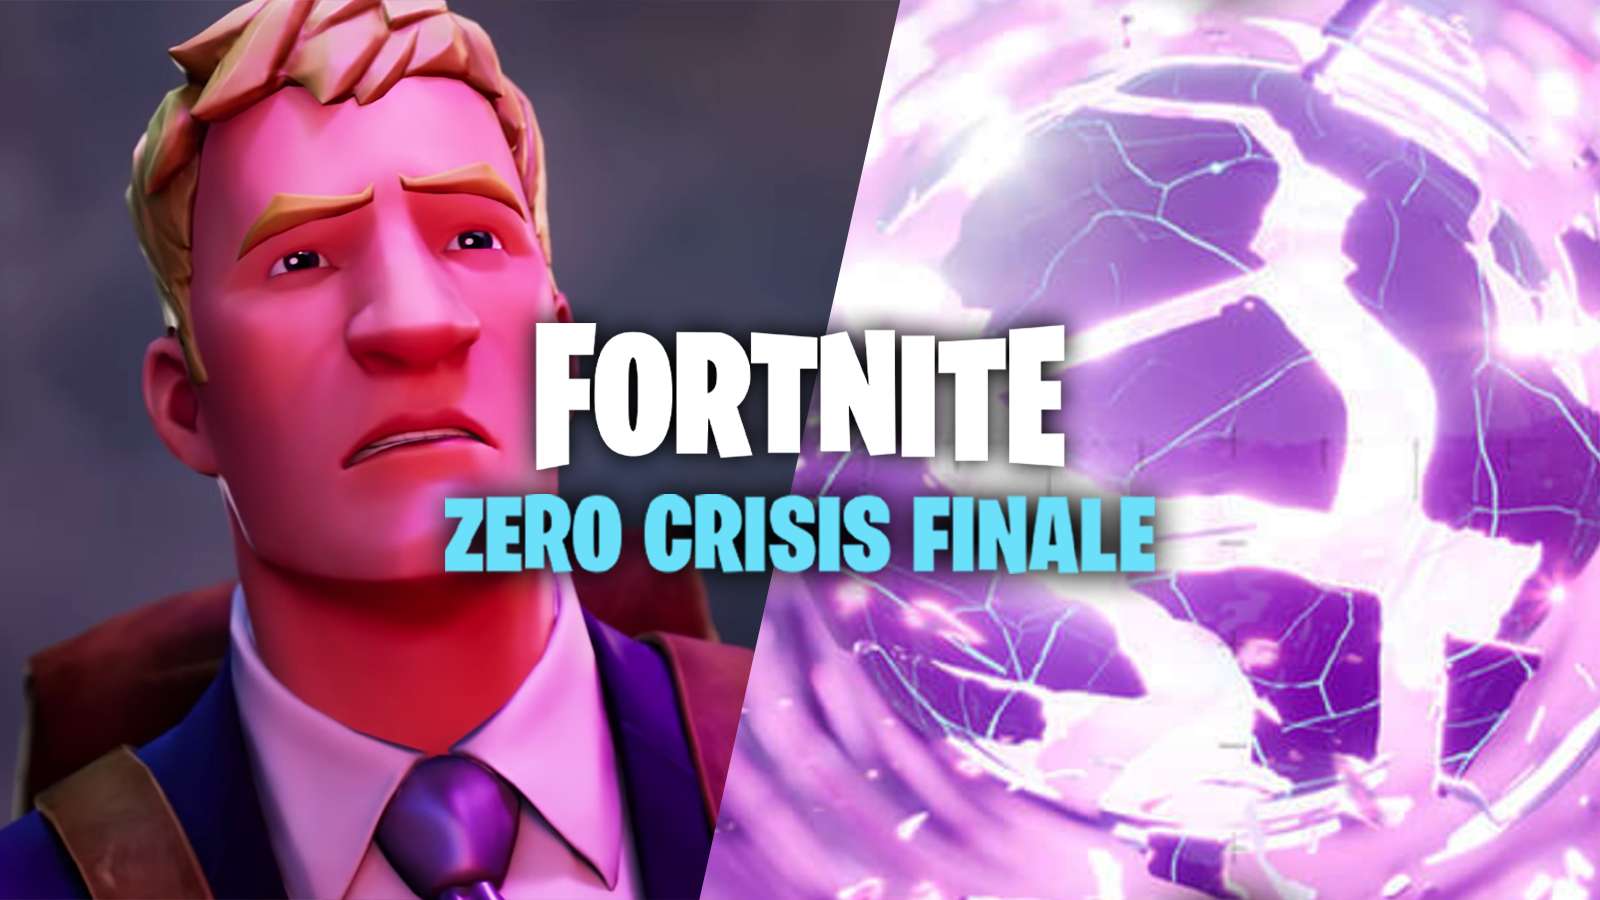 Fortnite Zero Crisis Finale event